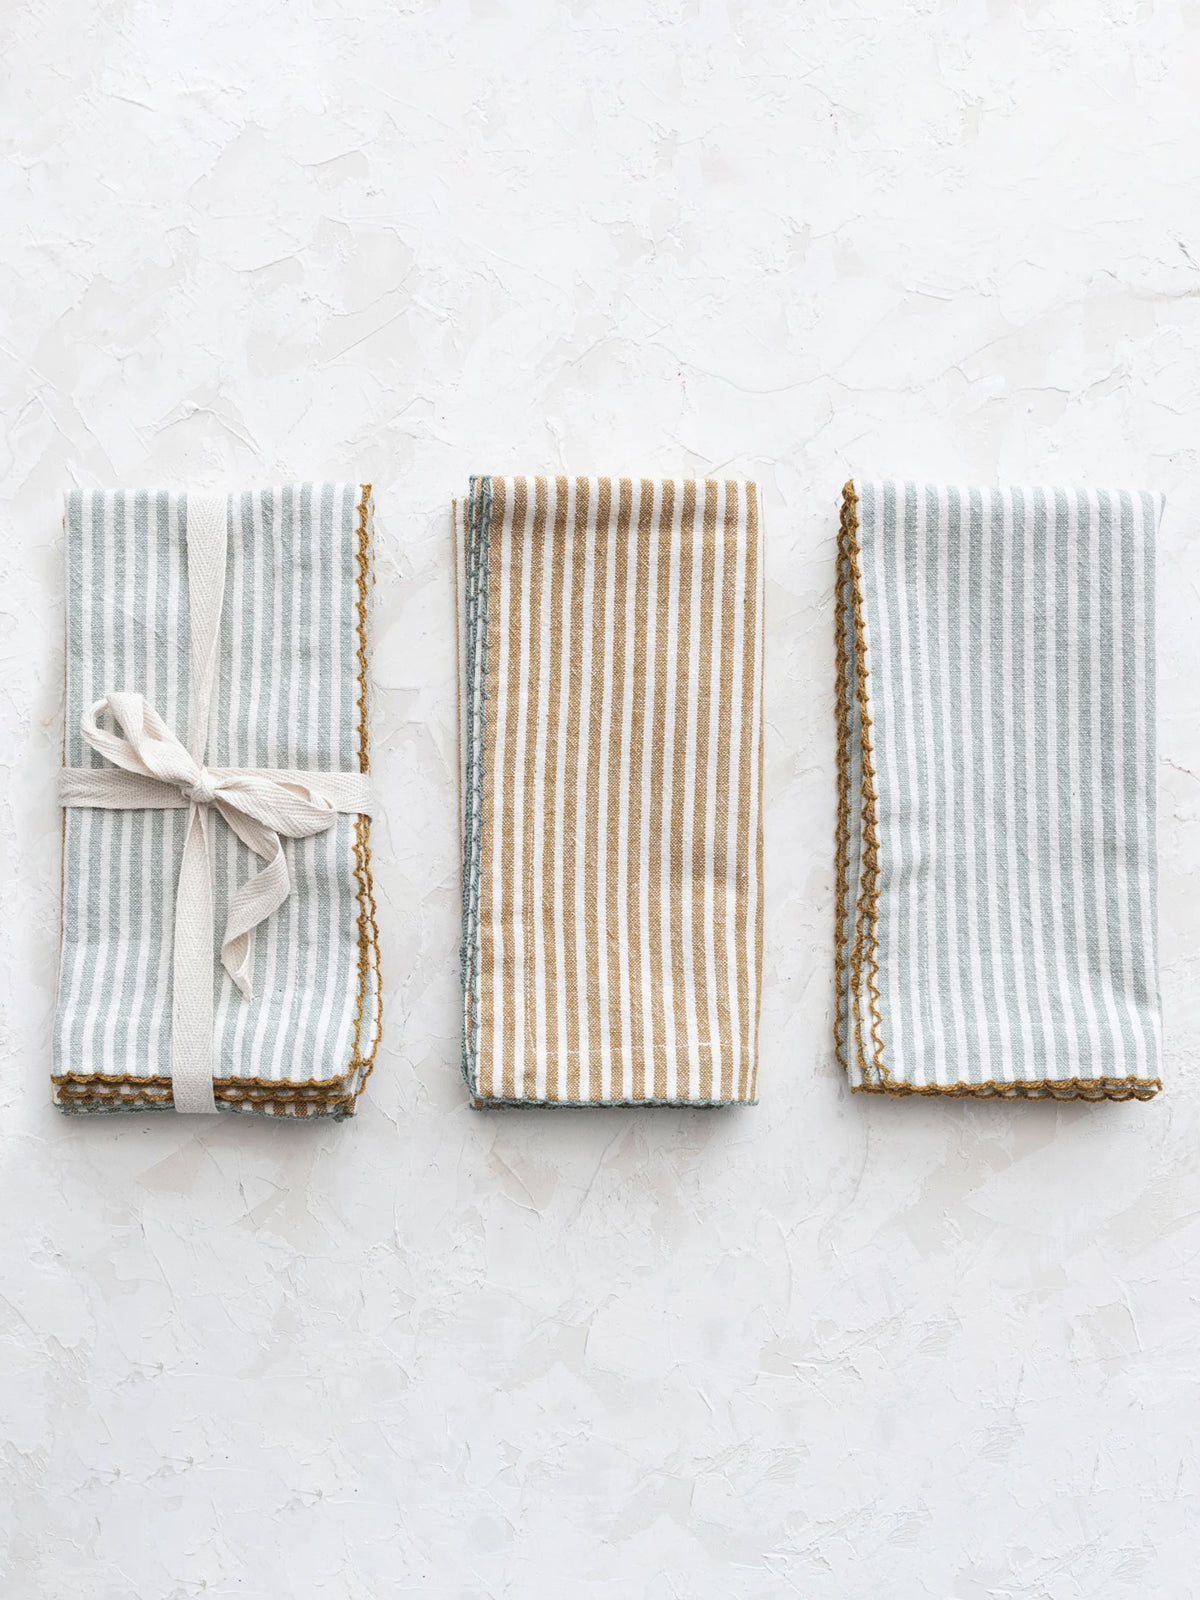 Stripes Cotton Napkin, Set of 4